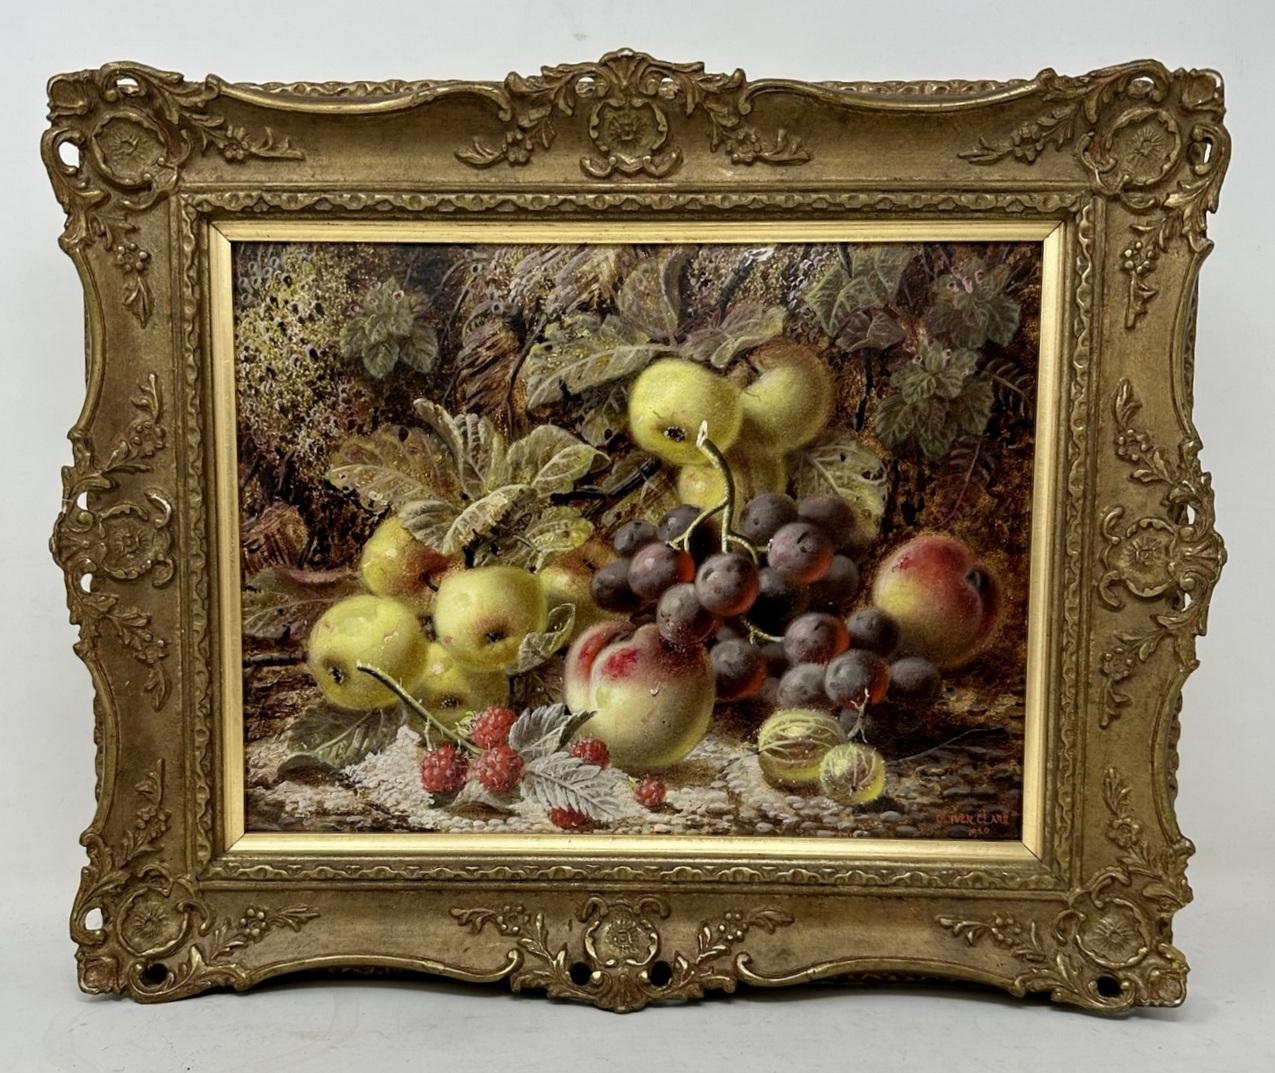 Eine außergewöhnlich feine Qualität Beispiel für eine gerahmte Stillleben von Früchten Ölgemälde auf Künstler Bord von gut dokumentiert englischen Künstler Oliver Clare, erstes Quartal des zwanzigsten Jahrhunderts. Vollständig mit seinem